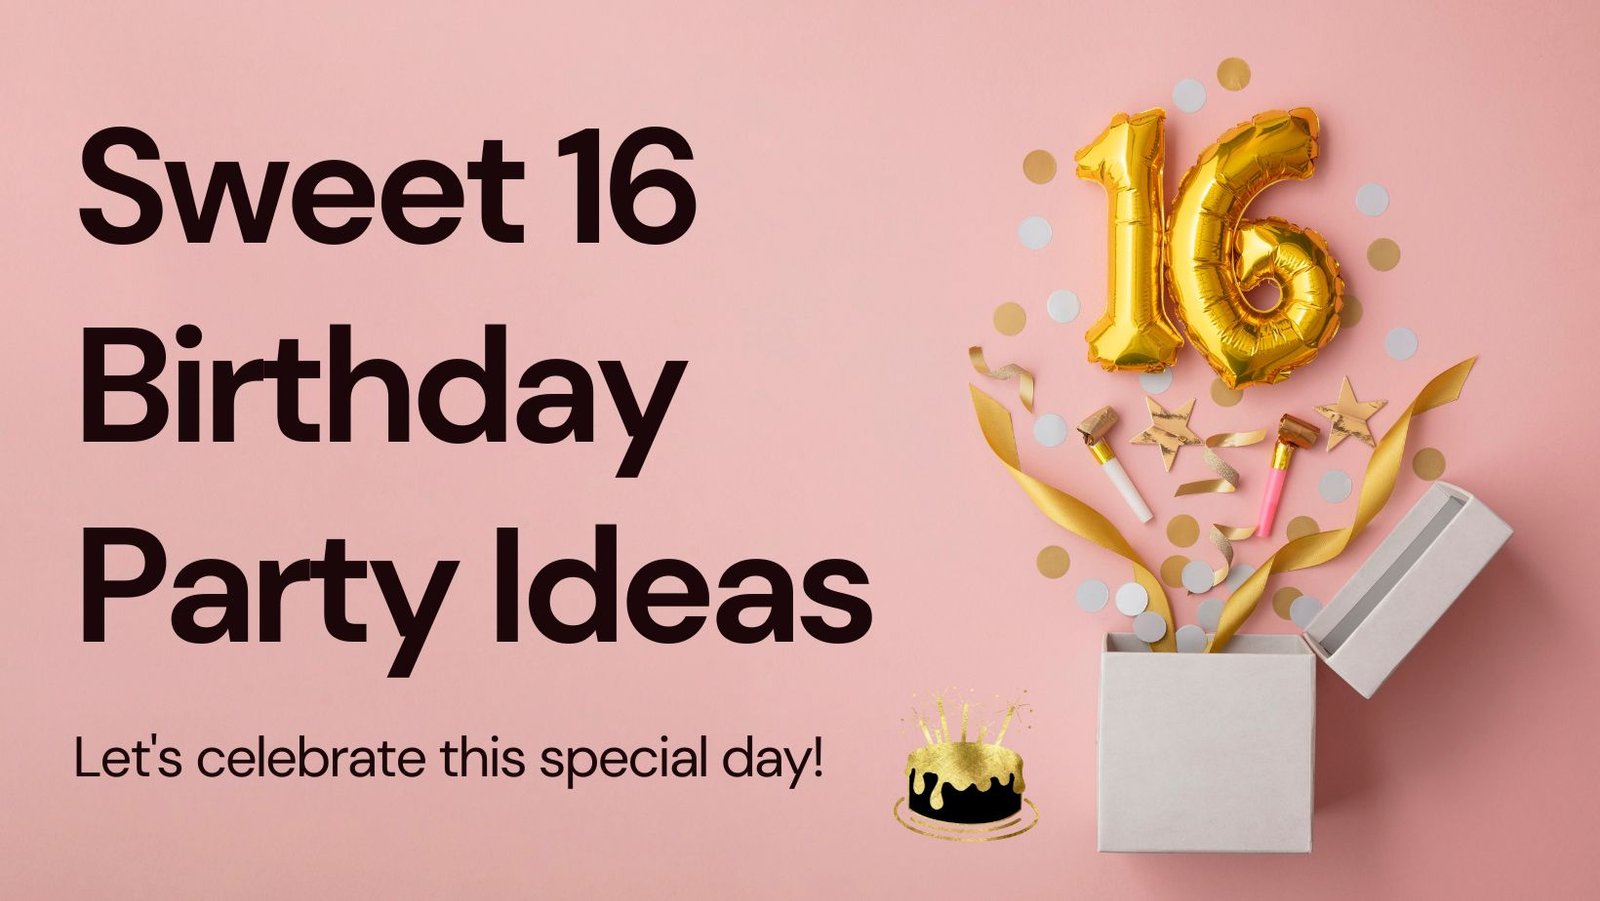 Unforgettable Sweet 16 Birthday Ideas: Creating Lasting Memories